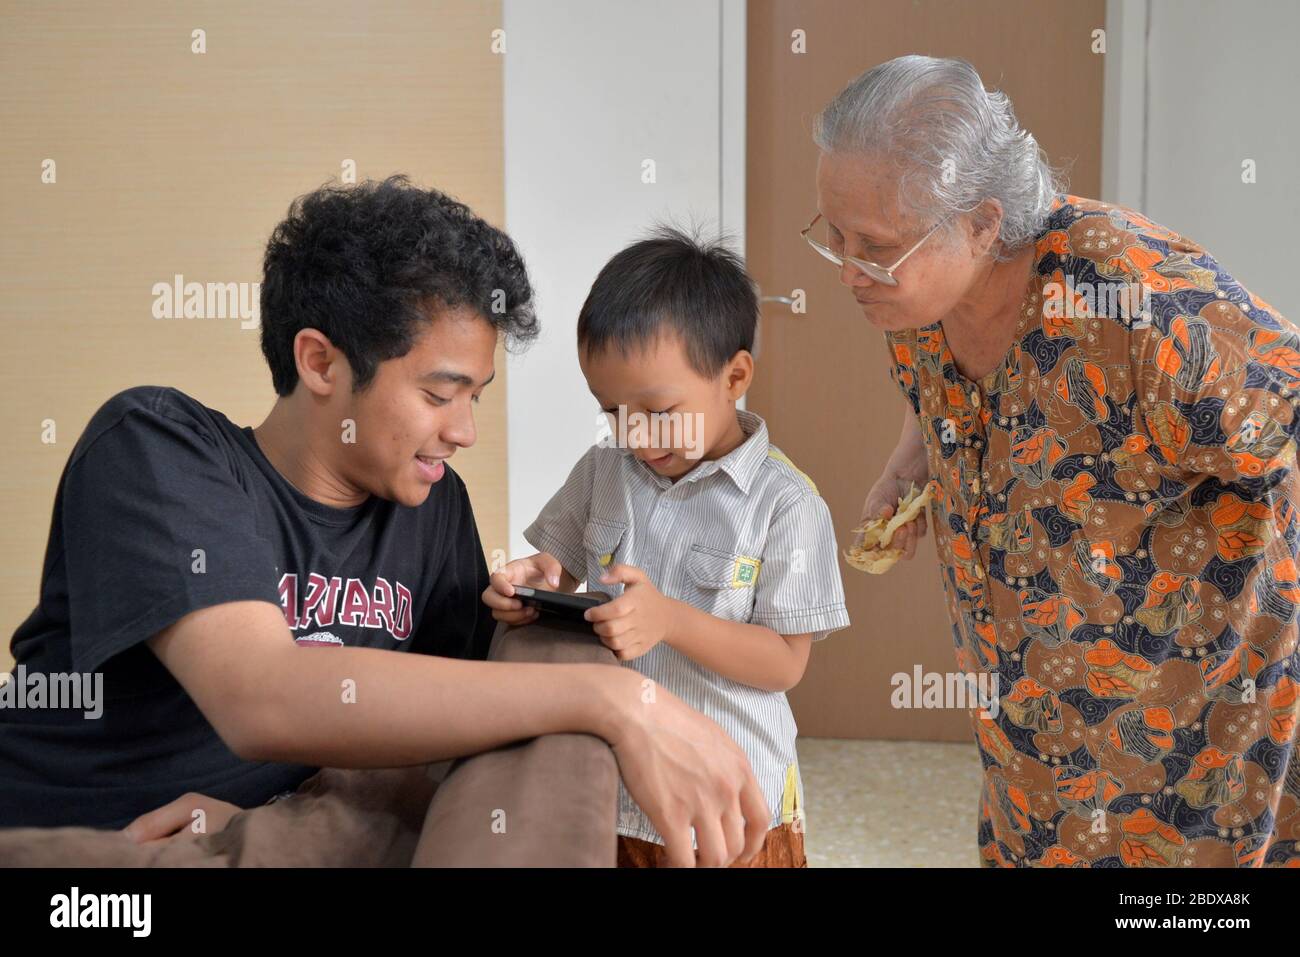 Un ragazzo gioca con lo smartphone mentre suo fratello e sua nonna guardano. Foto Stock